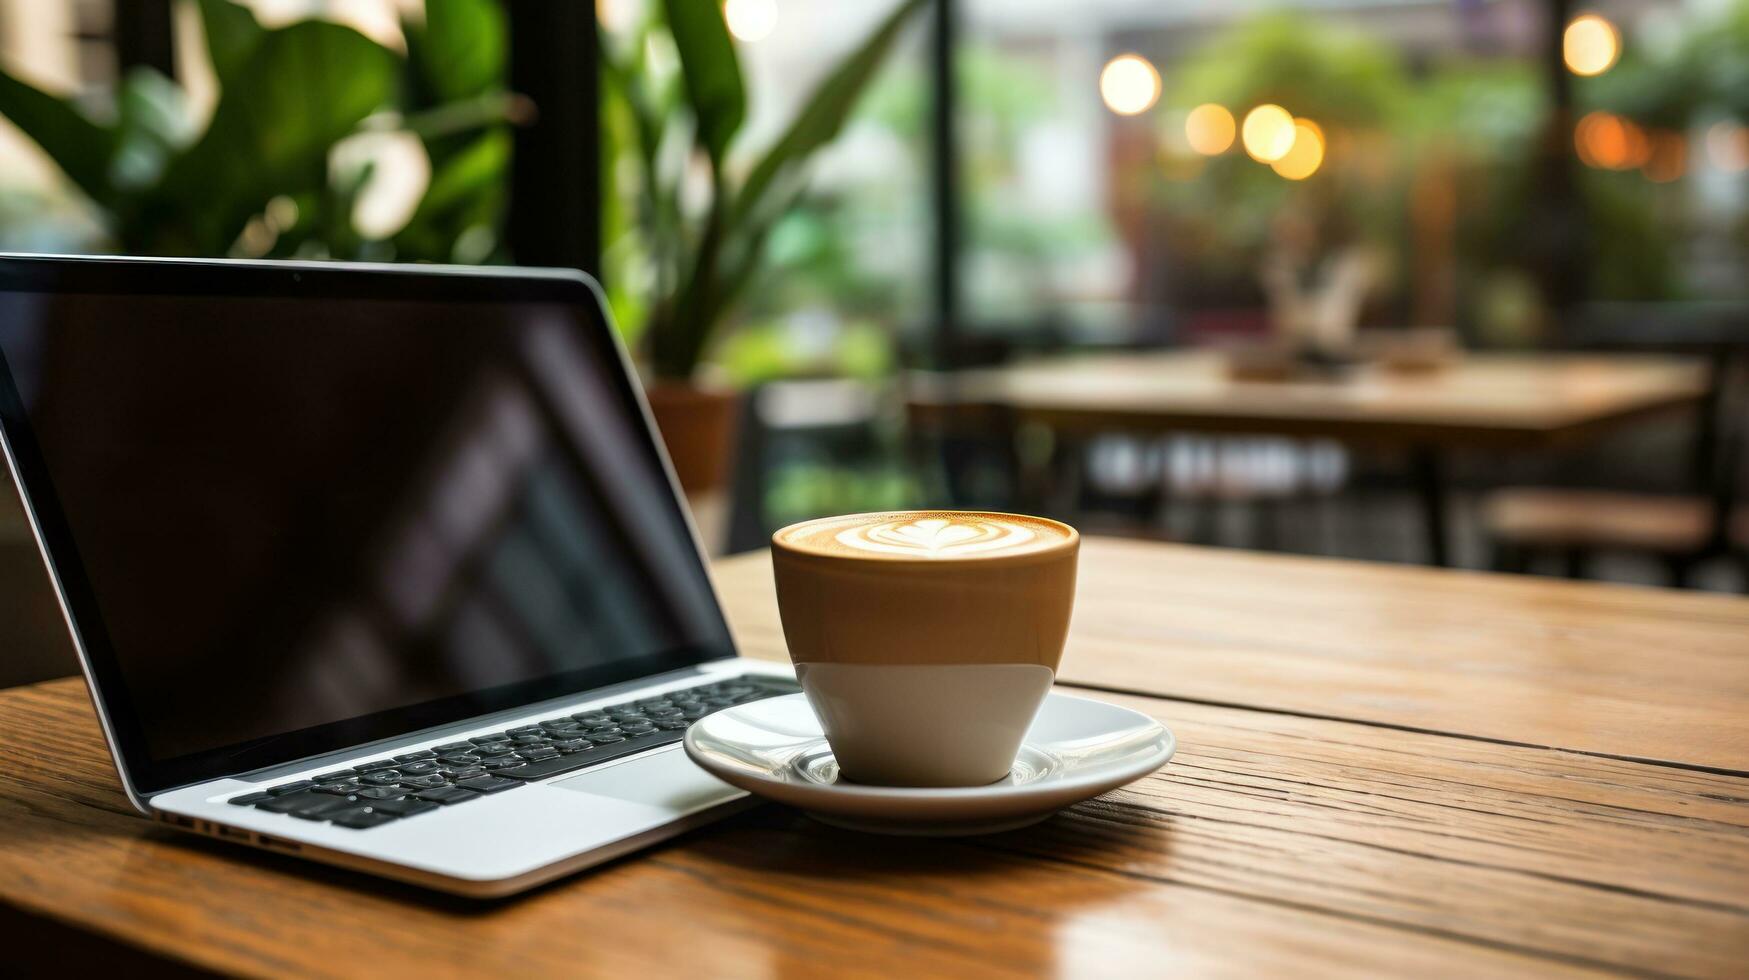 detailopname van een laptop en koffie foto